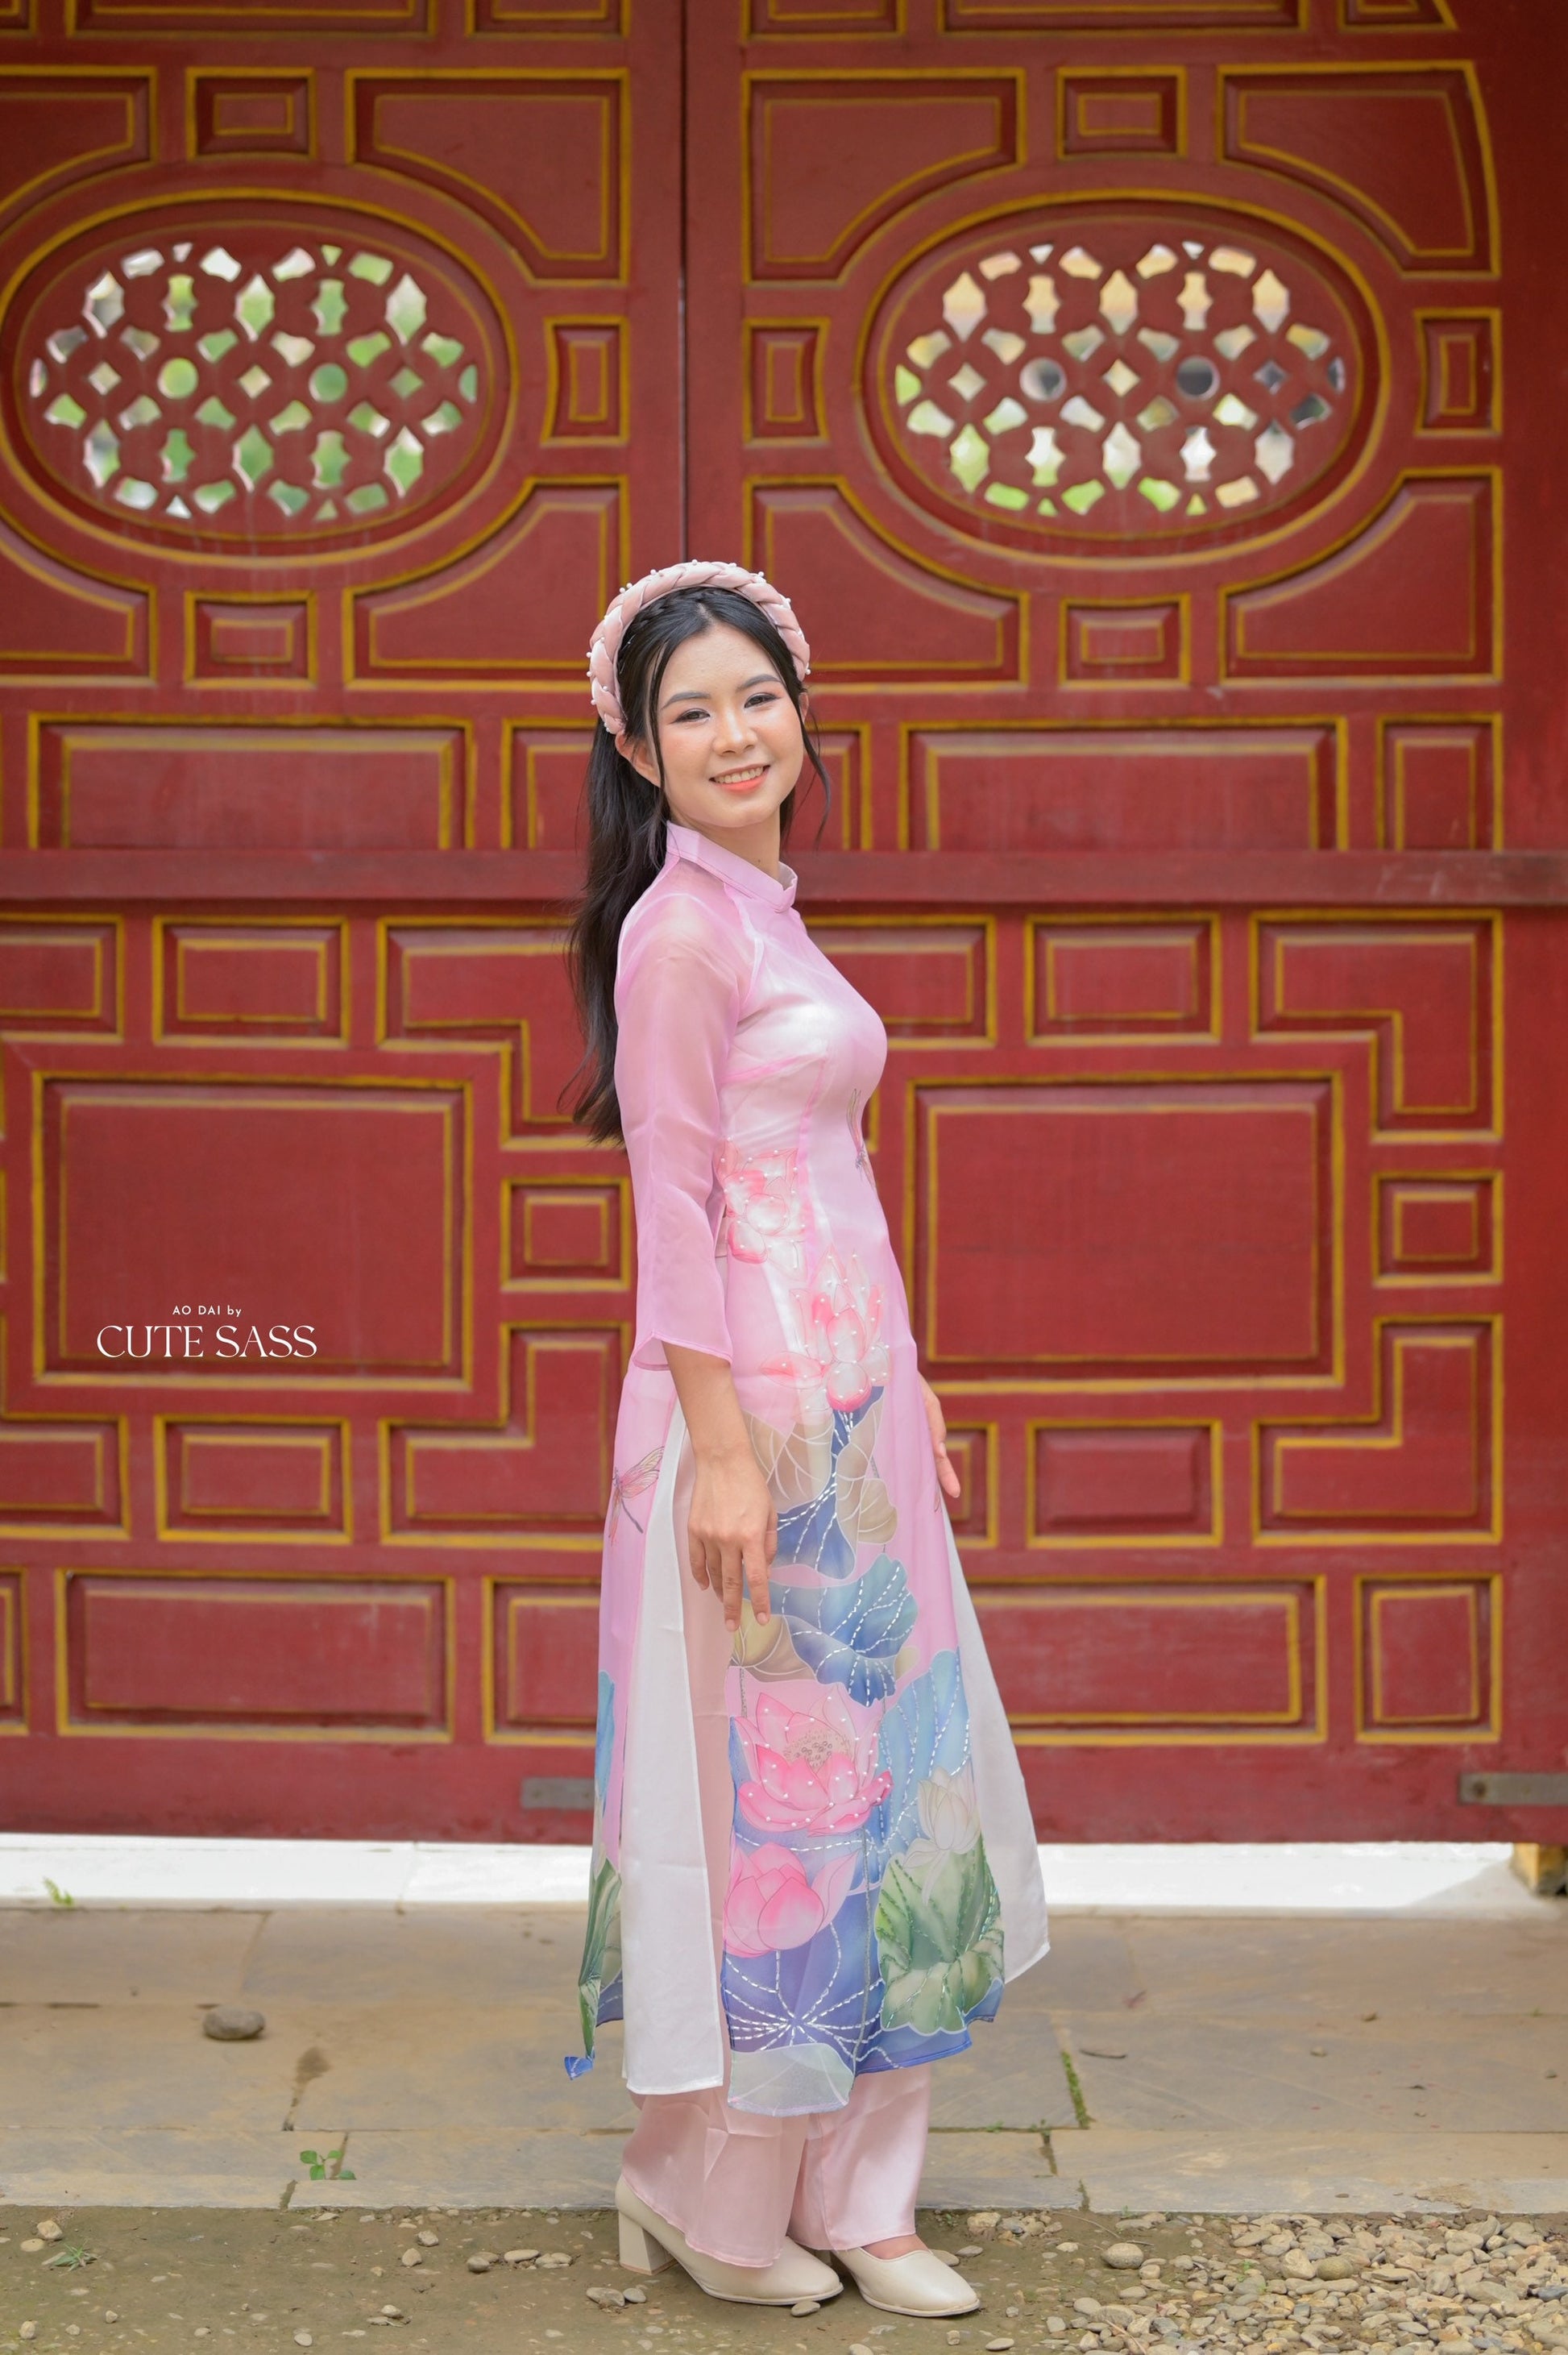 Áo dài là trang phục truyền thống đẹp nhất của phụ nữ Việt Nam. Hãy nhìn vào hình ảnh để chiêm ngưỡng sự tinh tế của áo dài!